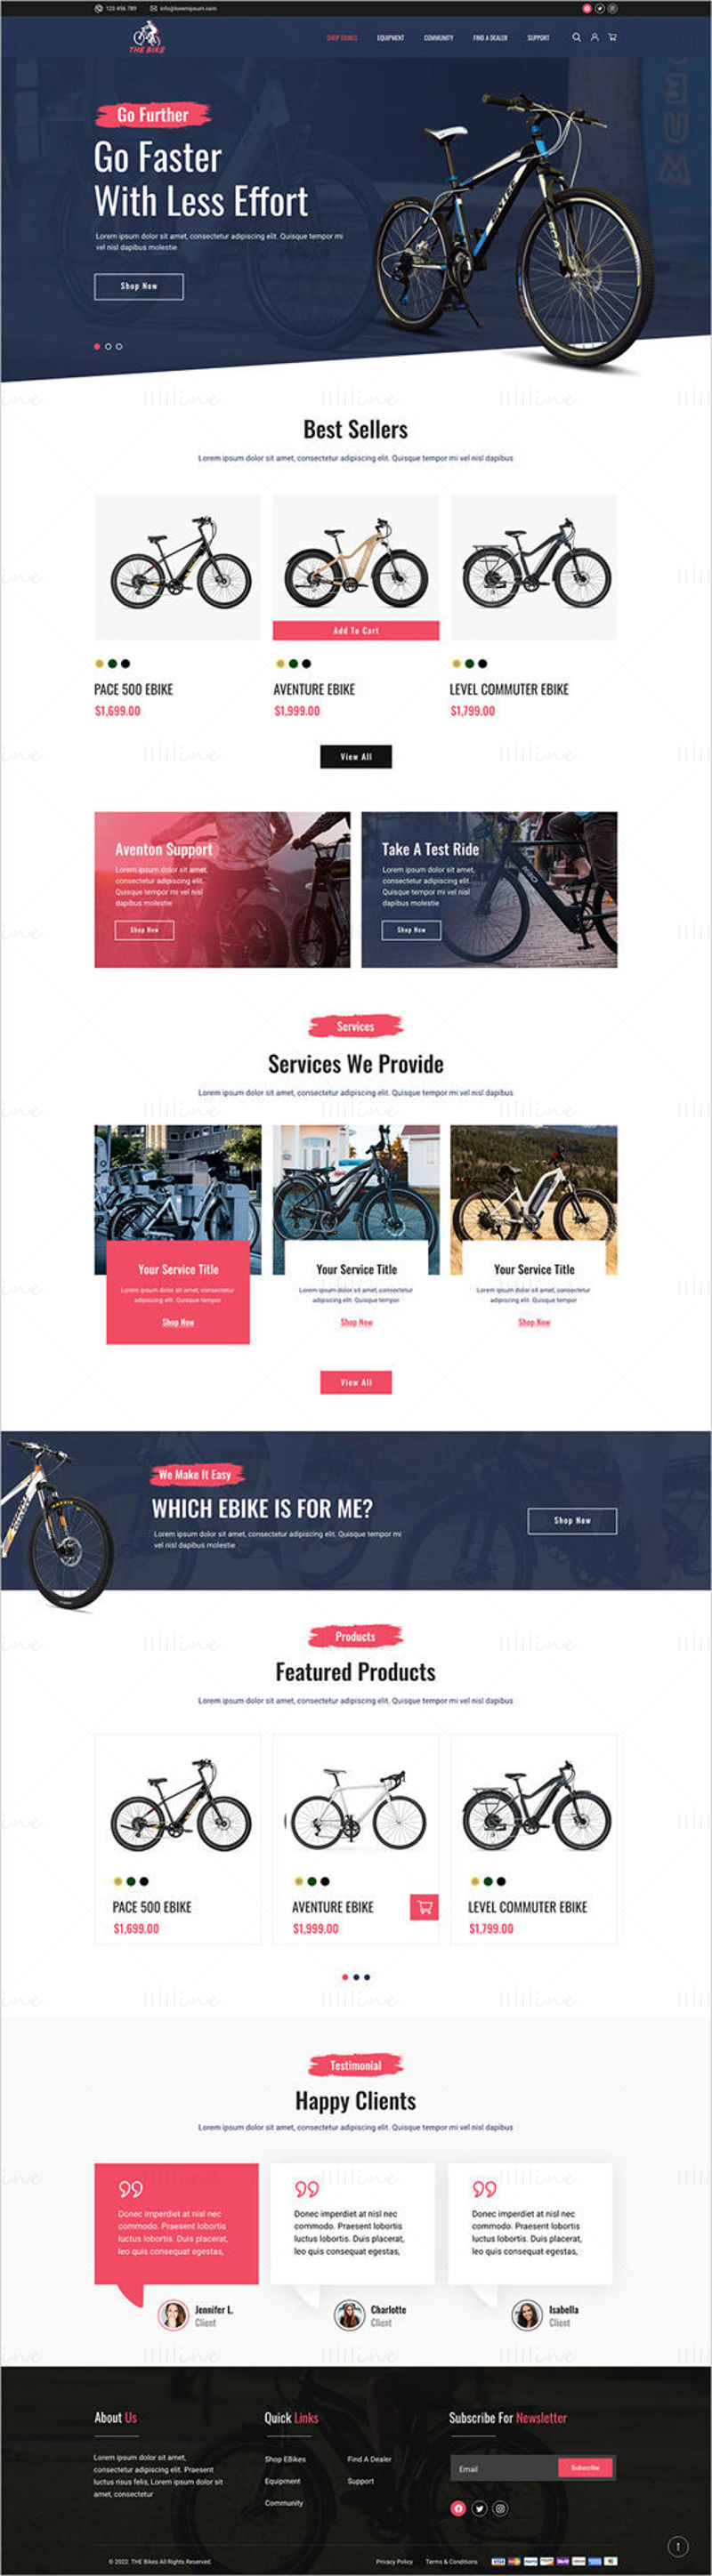 Modèle de page de destination de l'interface utilisateur du site Web de The Bike Company conçu dans Adobe XD